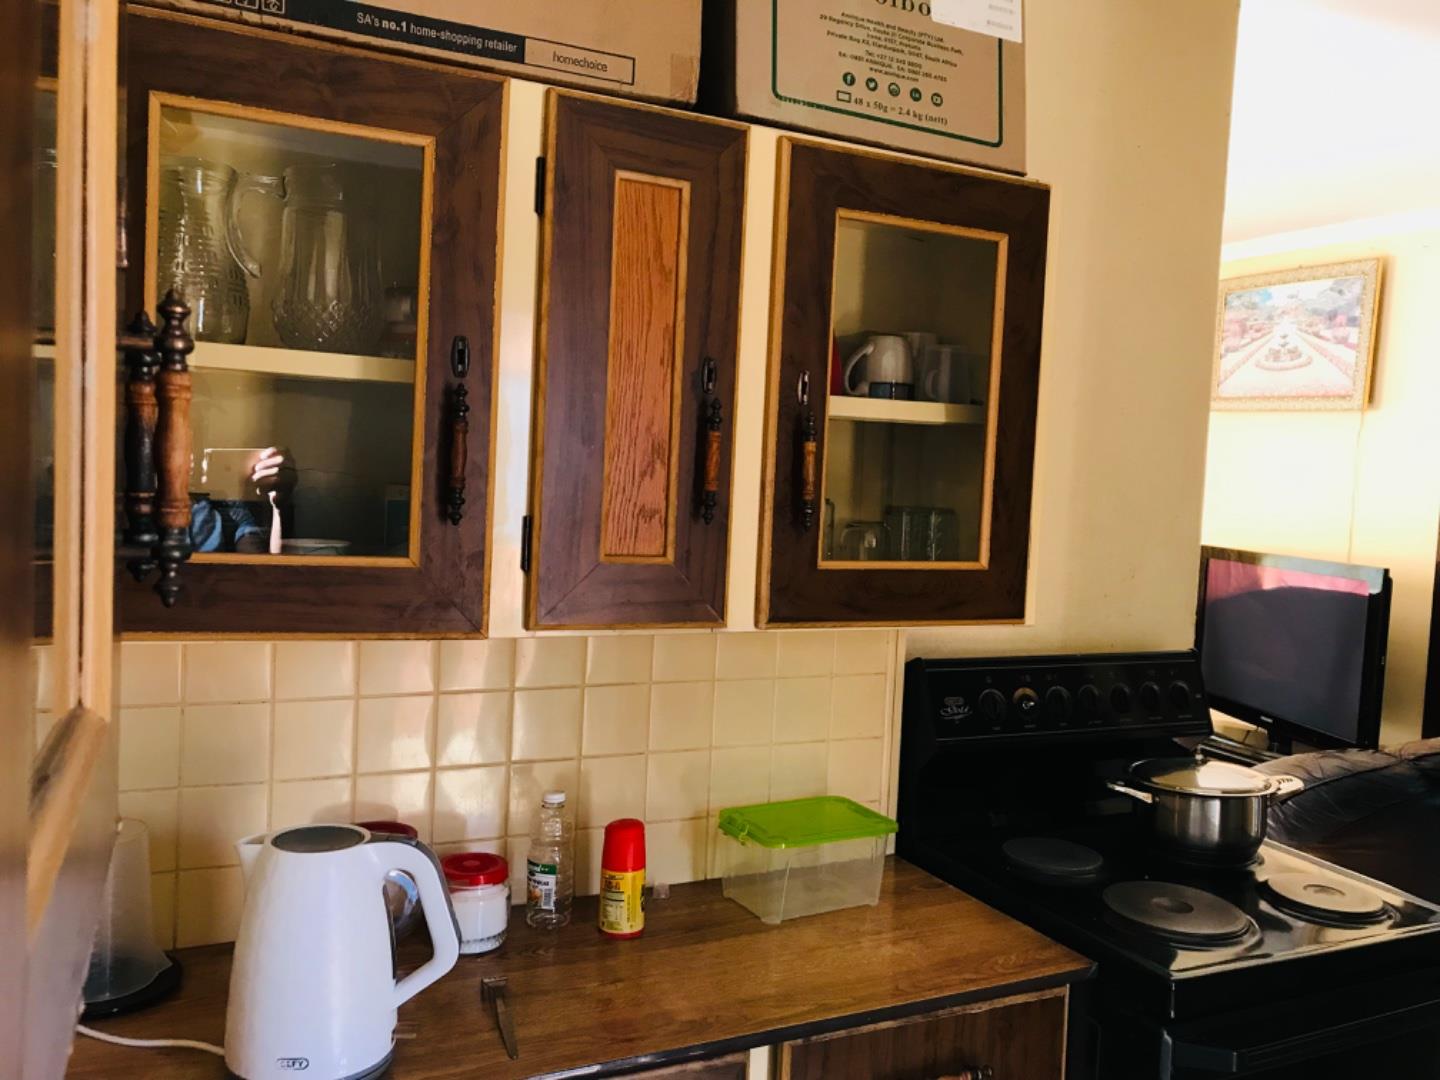 2 Bedroom Property for Sale in Soshanguve B Gauteng